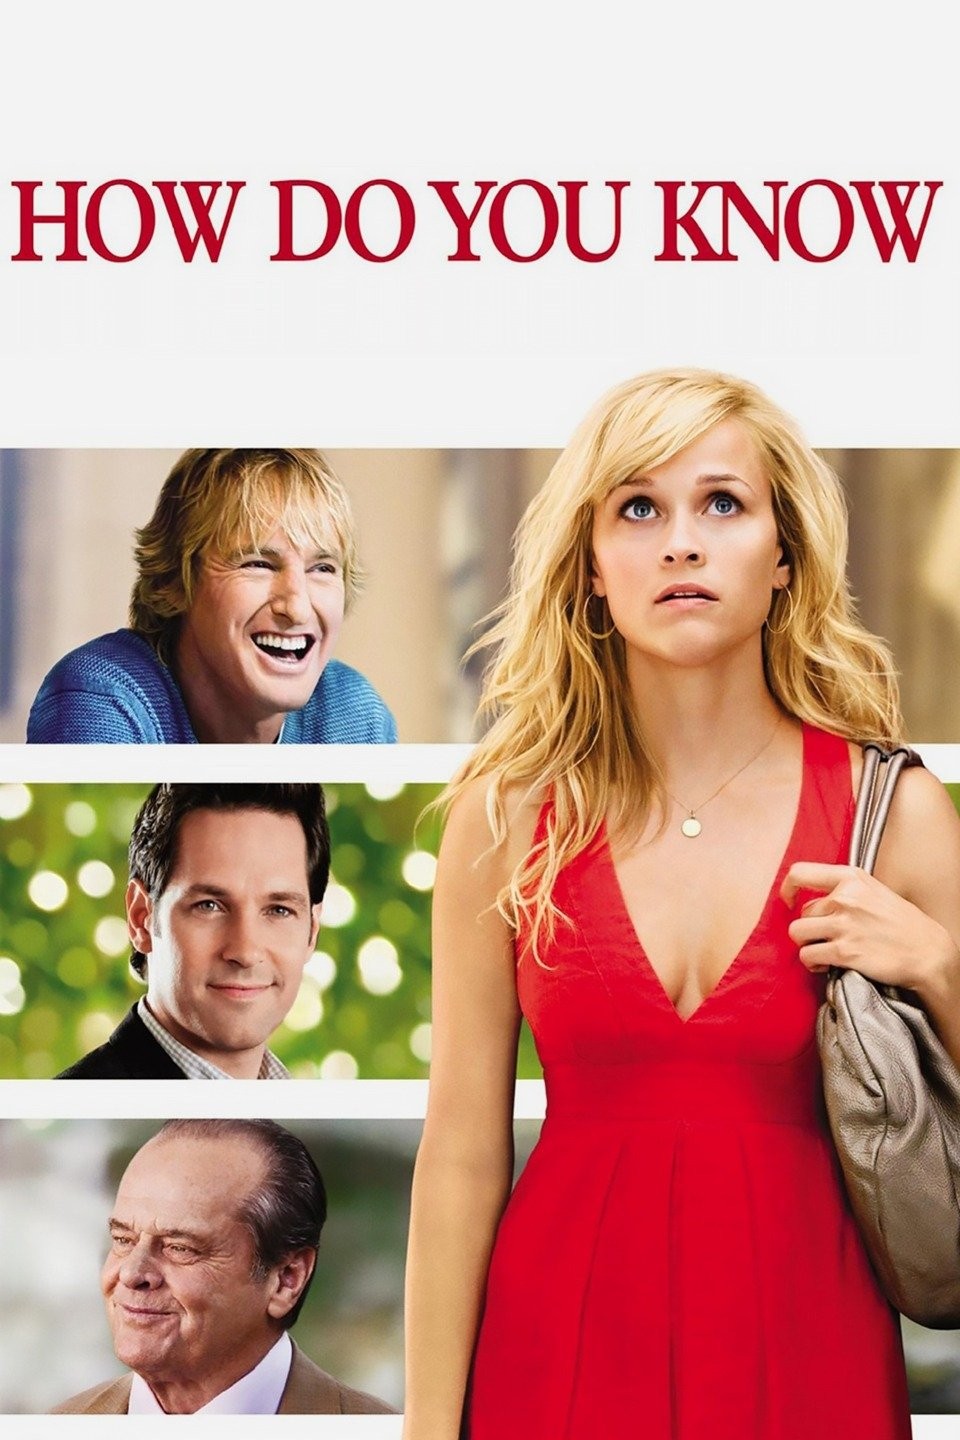 How Do You Know (2010)